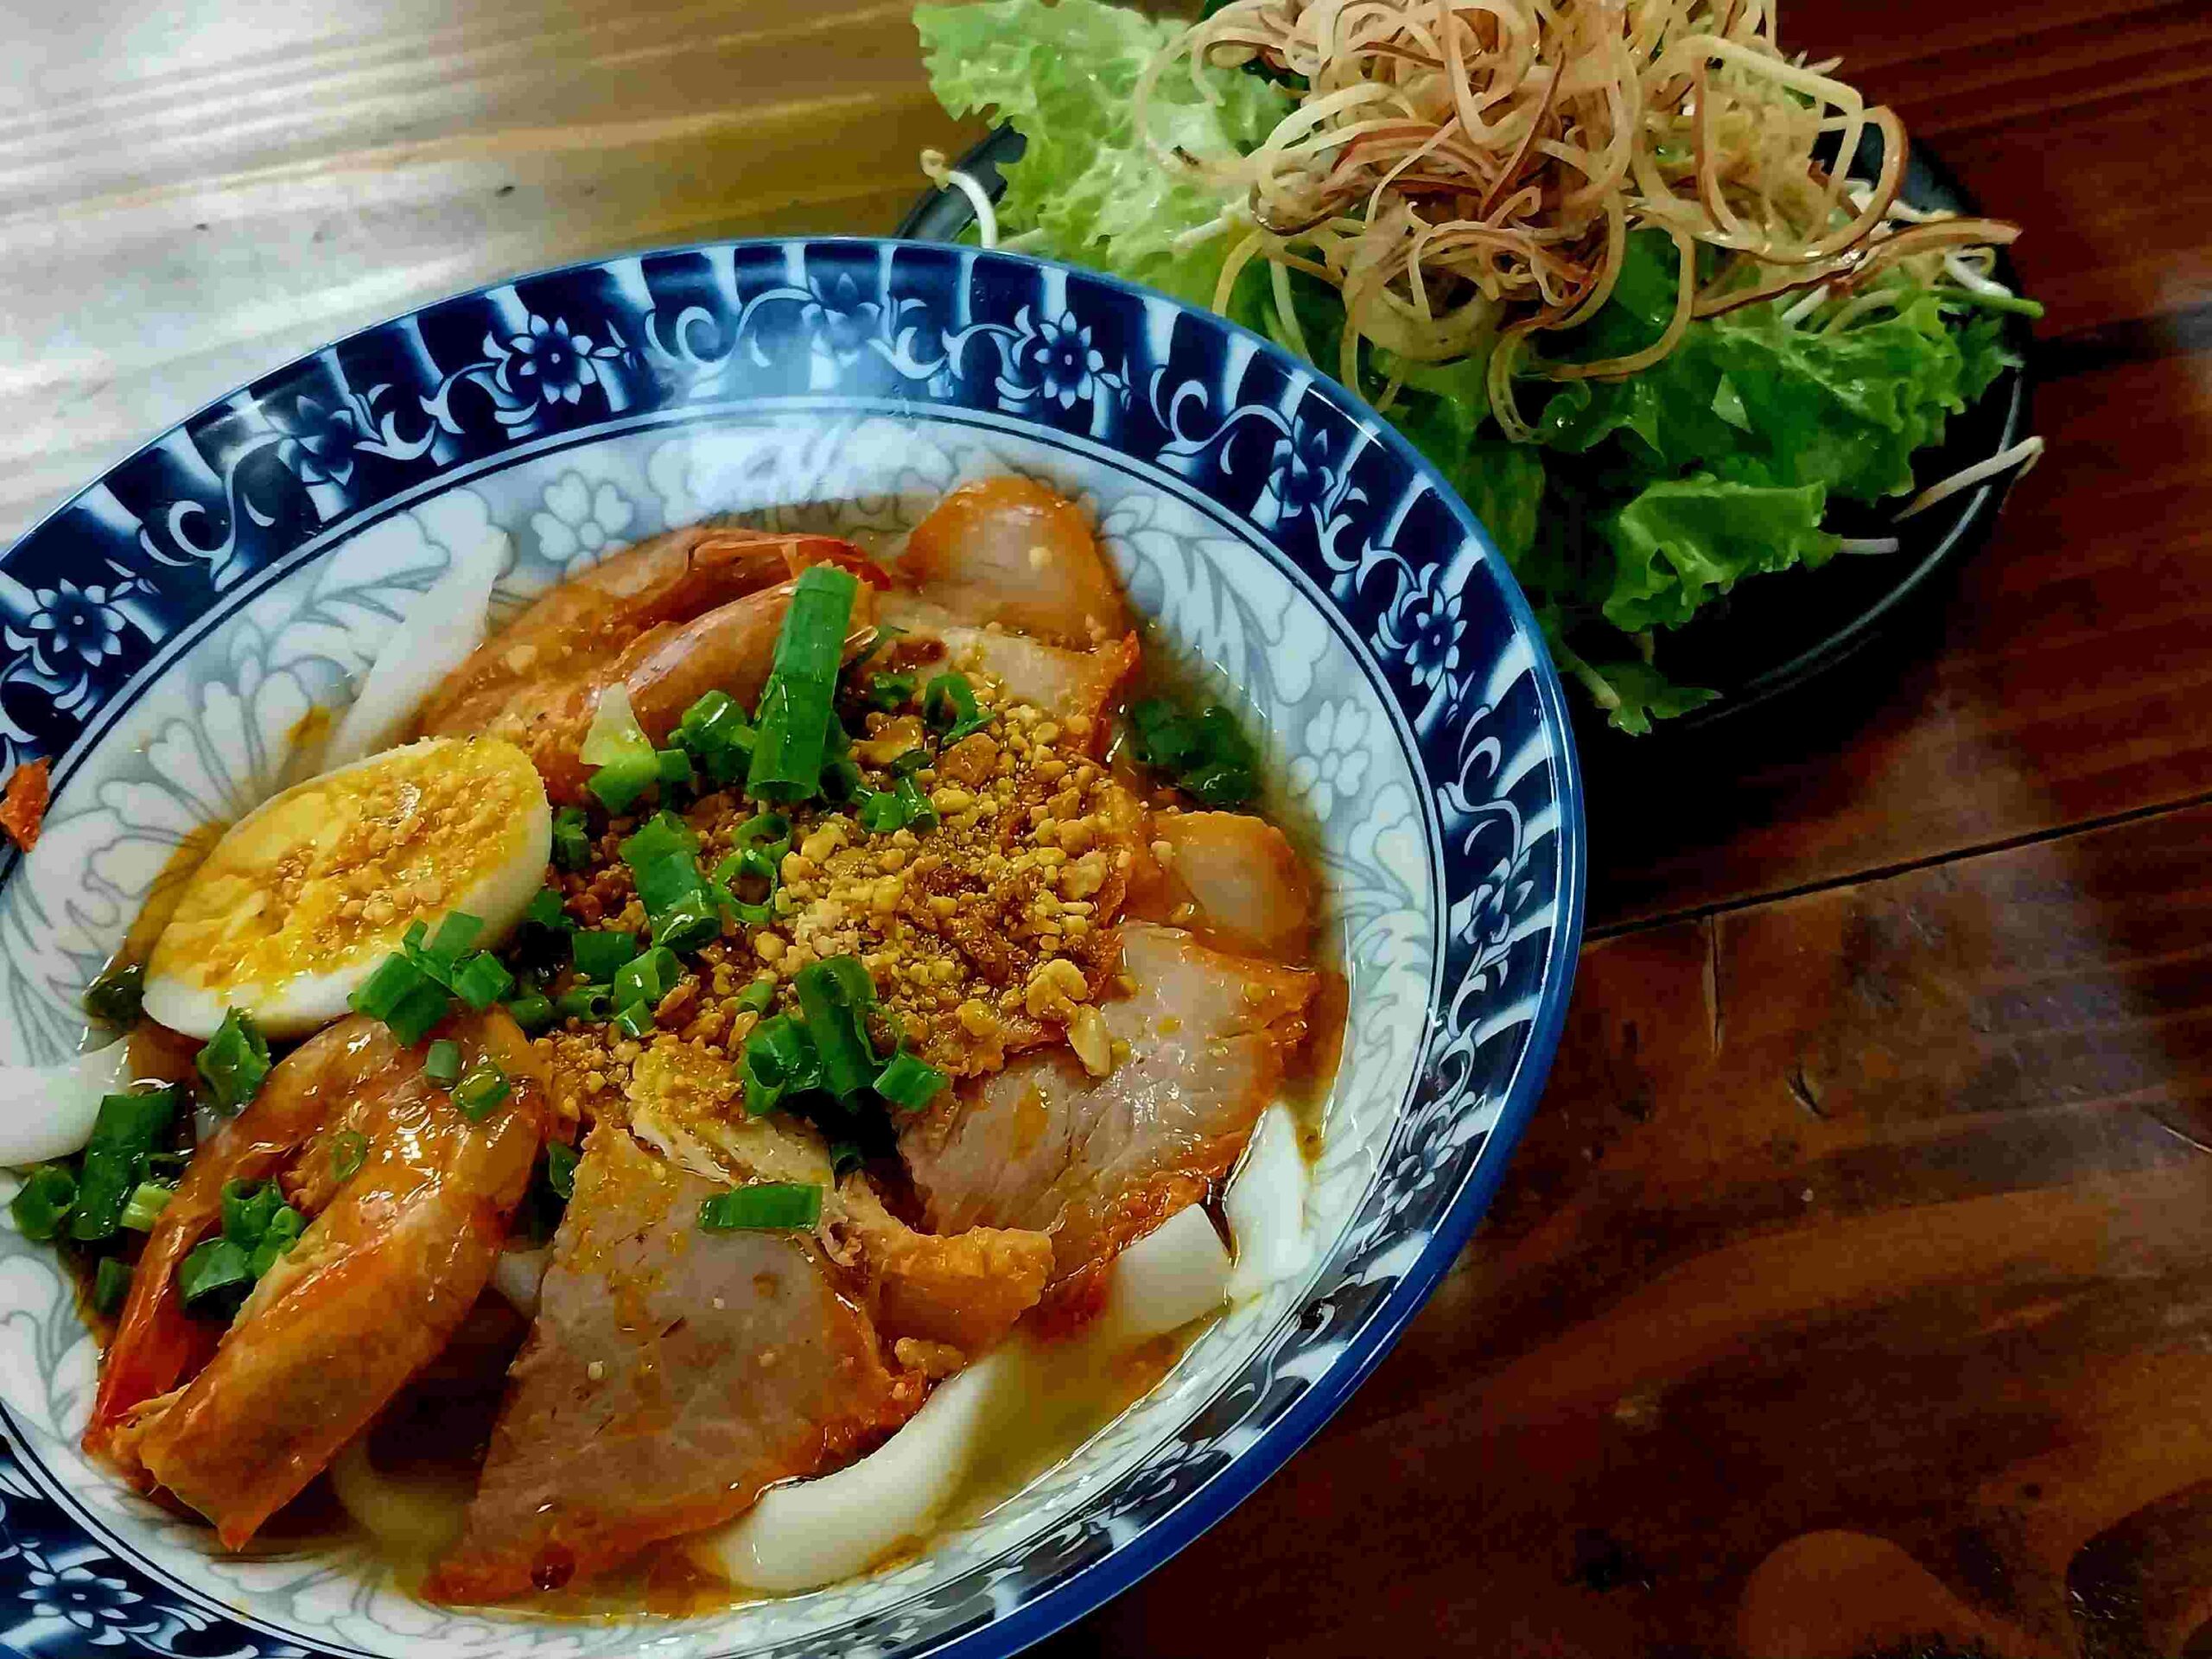 Hãy tới quán ăn đặc sản Đà Nẵng để thưởng thức mì Quảng nhé